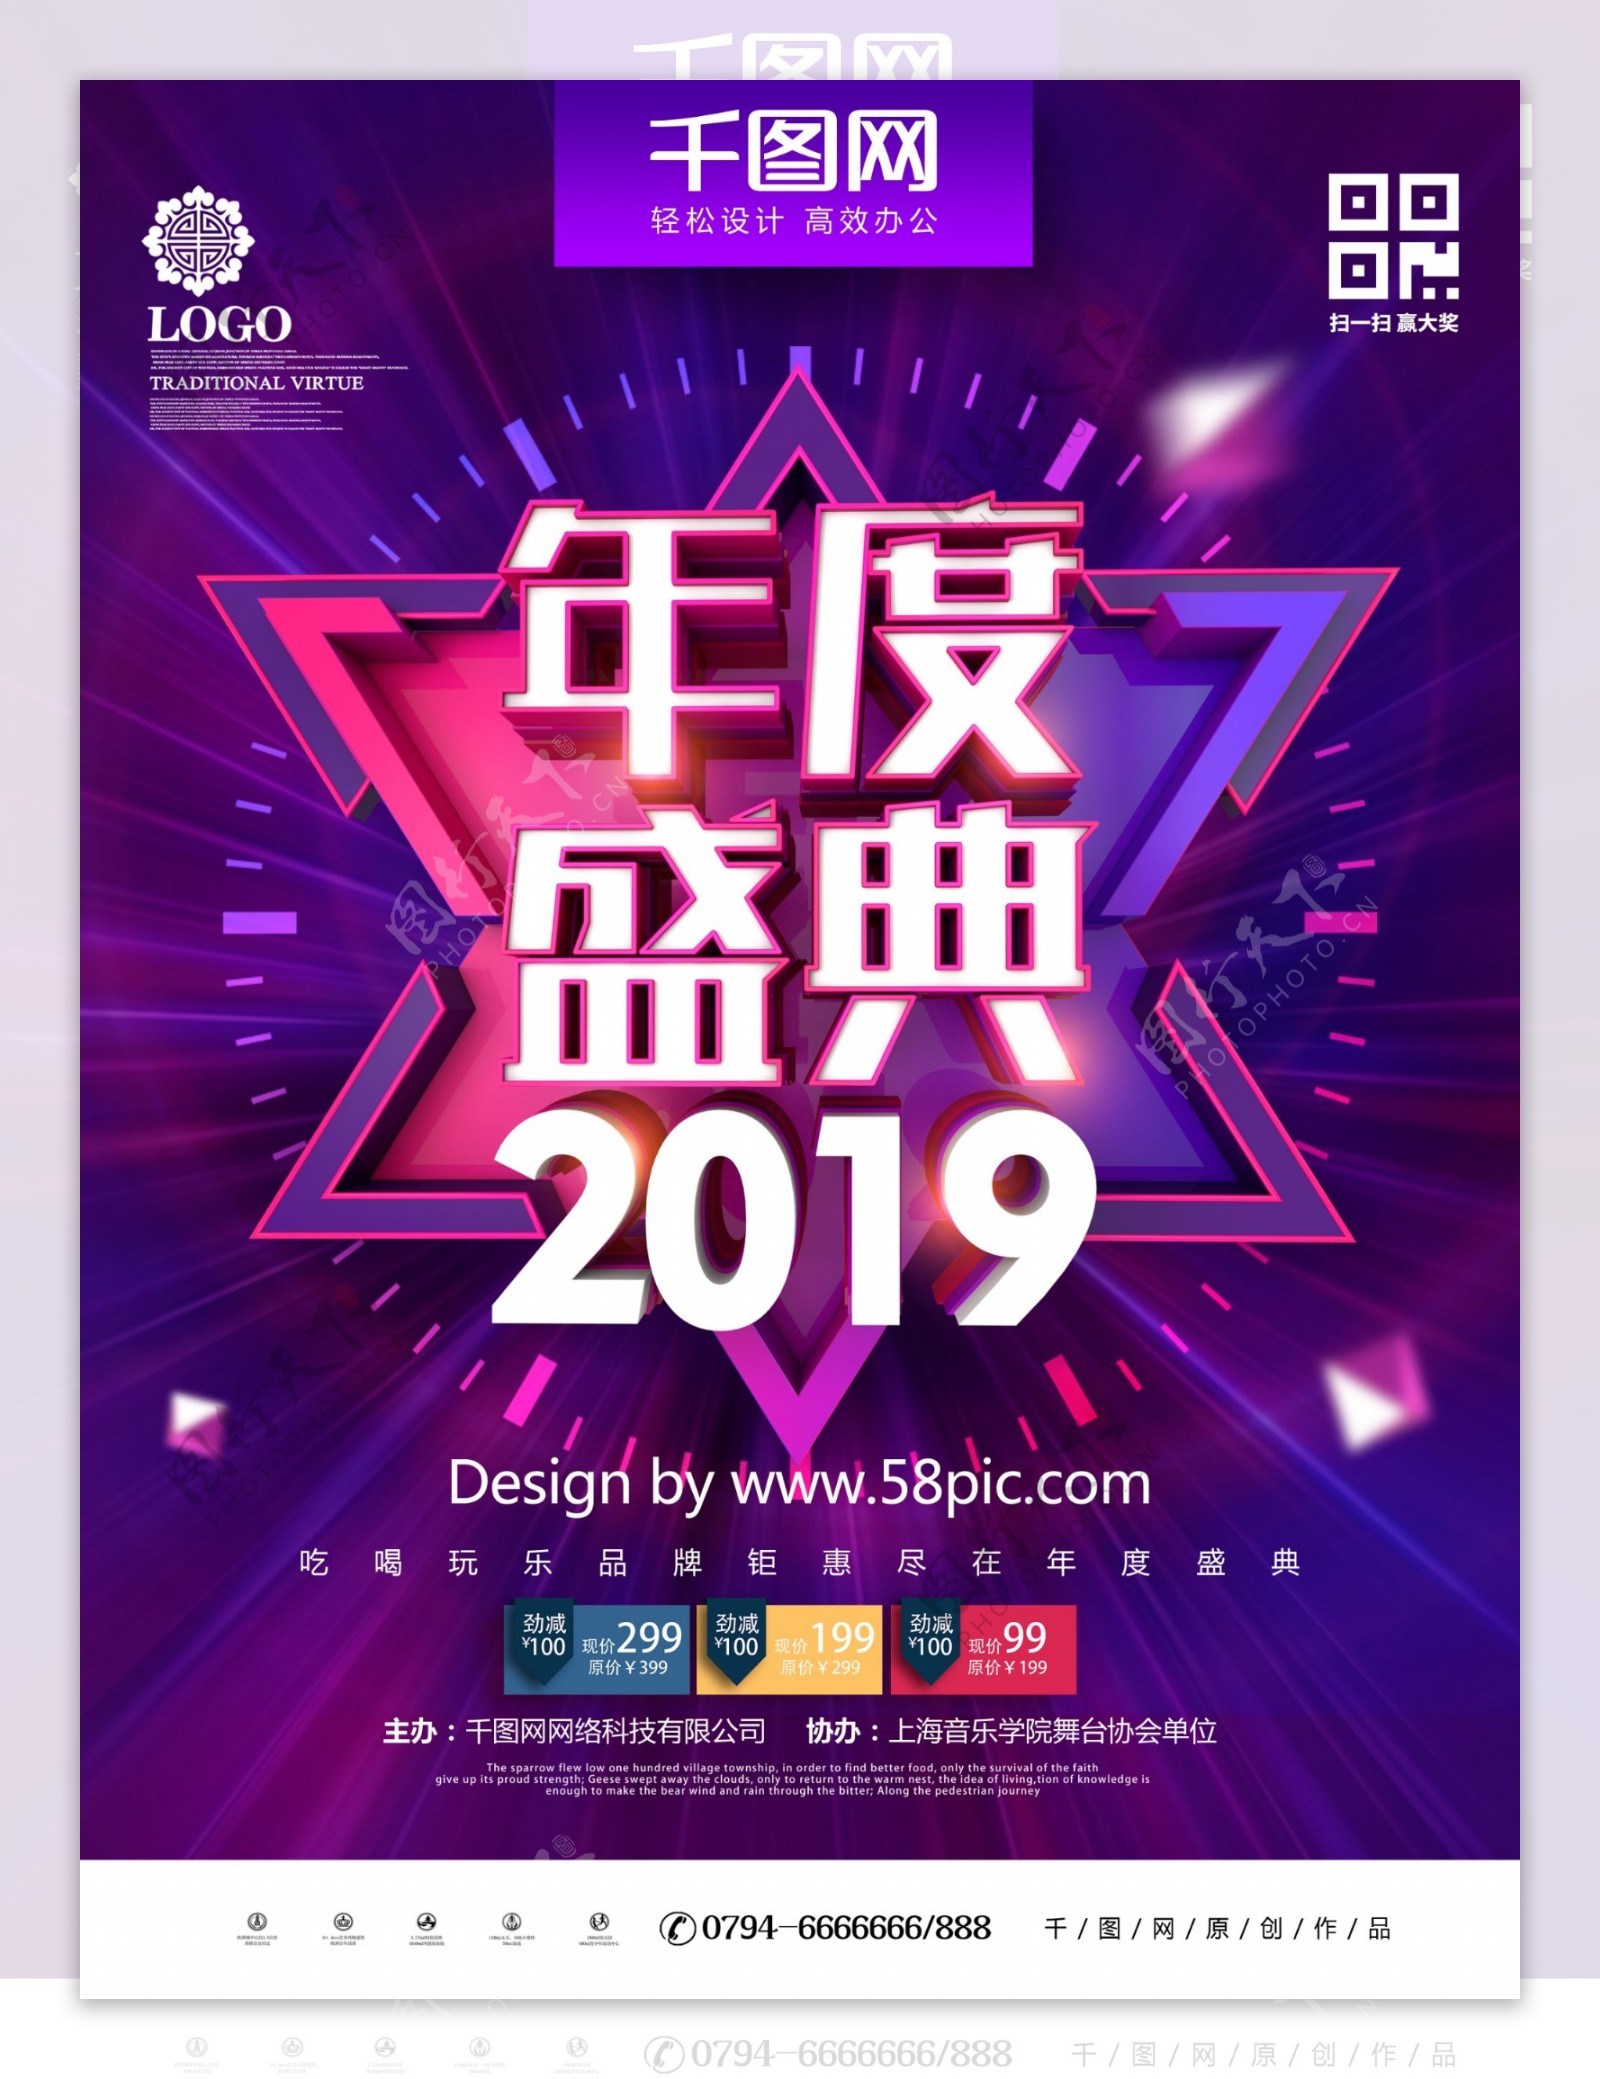 C4D创意时尚炫酷2019年度盛典海报